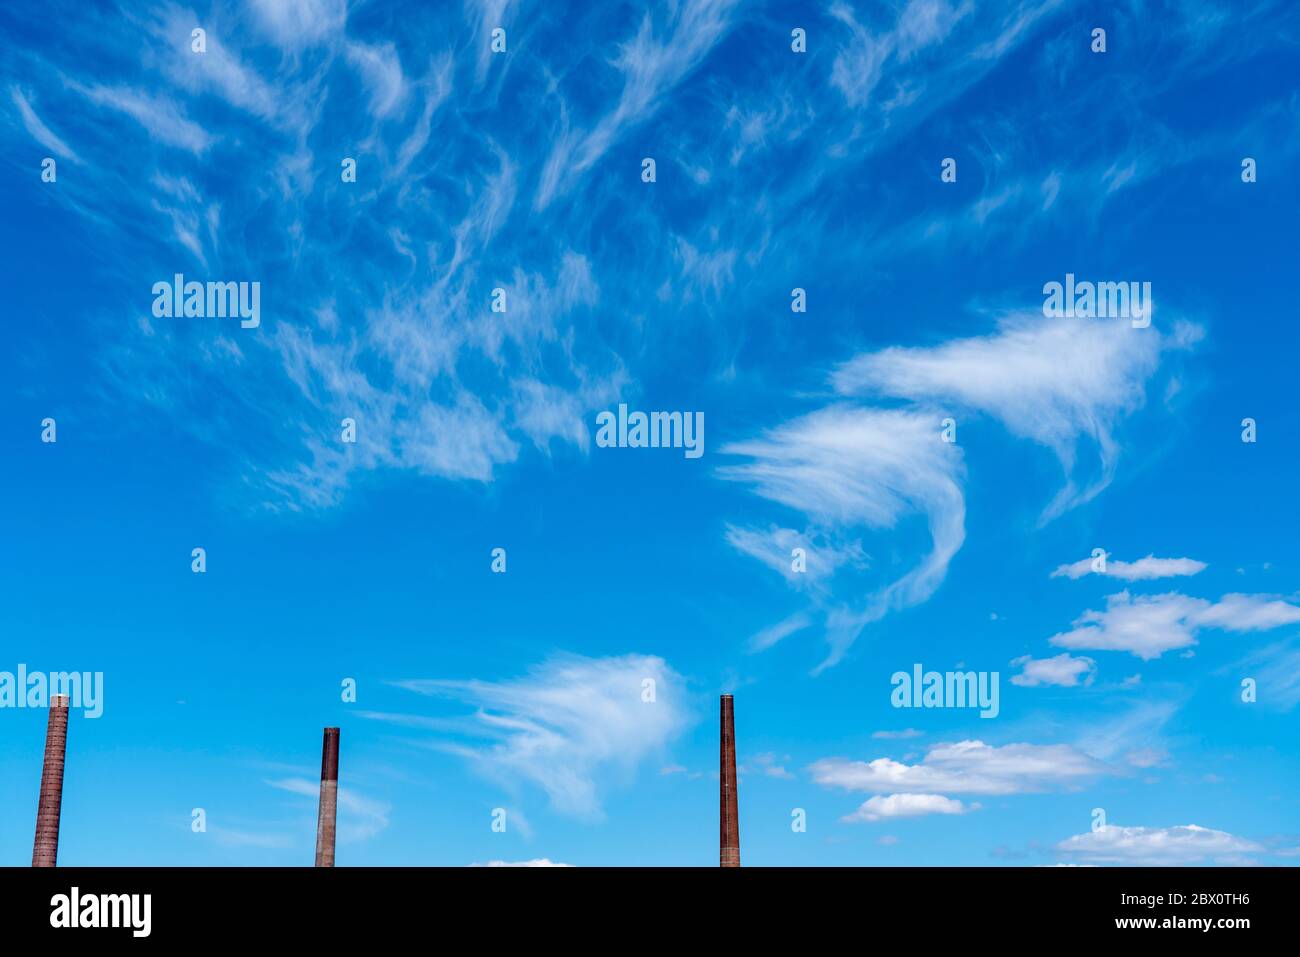 Ciel bleu avec des nuages cirrus, nuages de glace en filigrane à haute altitude, annonciateurs de temps plus chaud, cheminées, émissions Banque D'Images